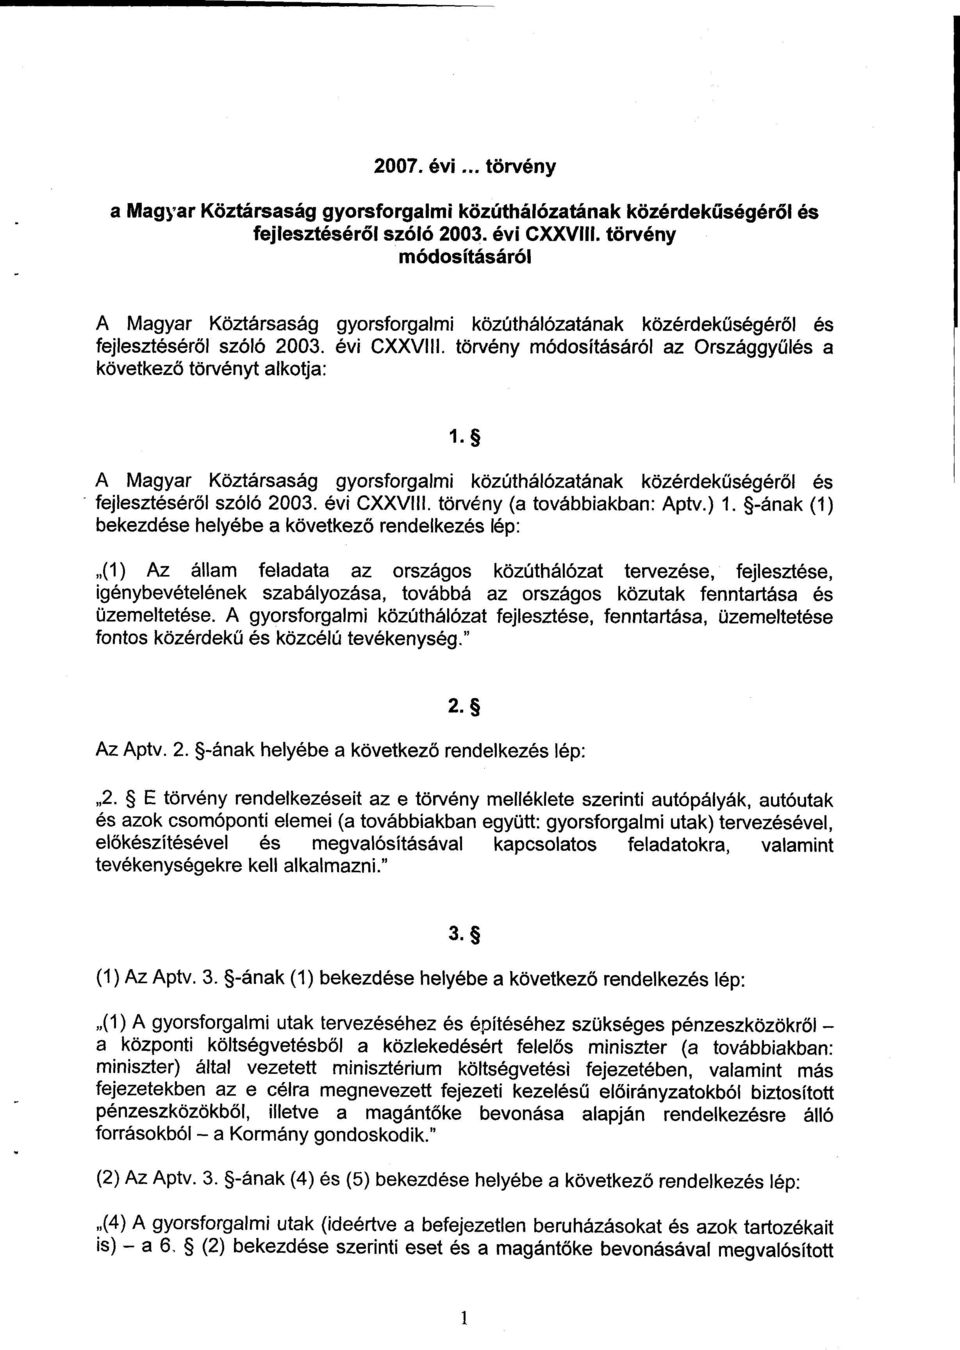 törvény módosításáról az Országgyűlés a következő törvényt alkotja : 1. A Magyar Köztársaság gyorsforgalmi közúthálózatának közérdekűségéről és fejlesztéséről szóló 2003. évi CXXVIII.